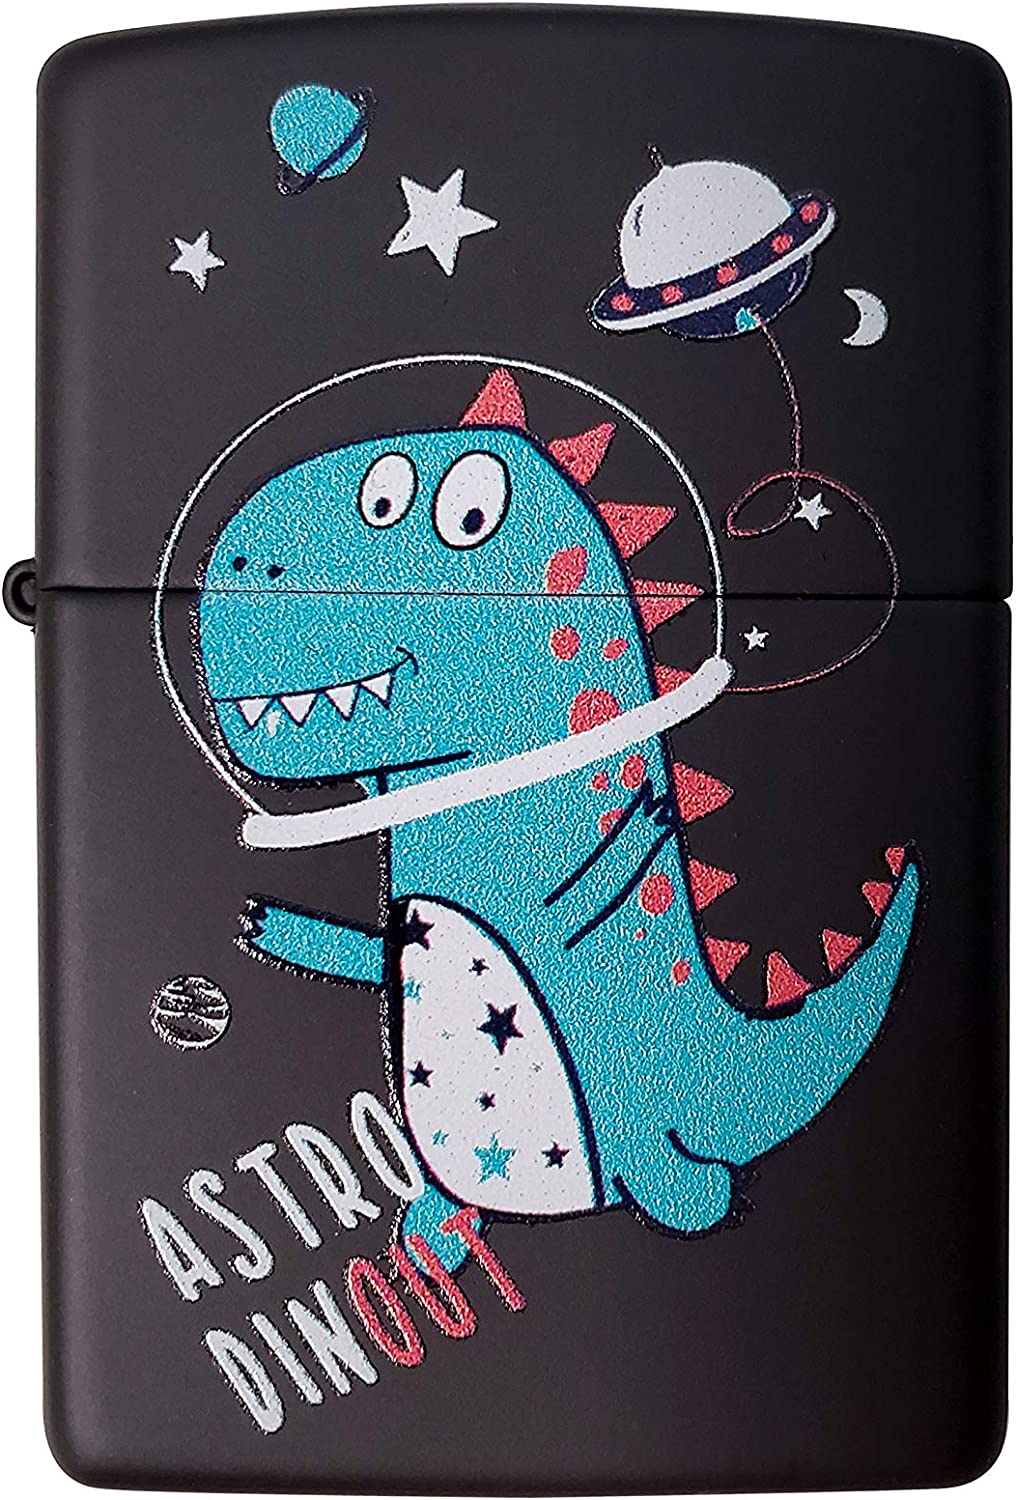 Explore the Universe with the Astro Dino - Black Matte Zippo Lighter